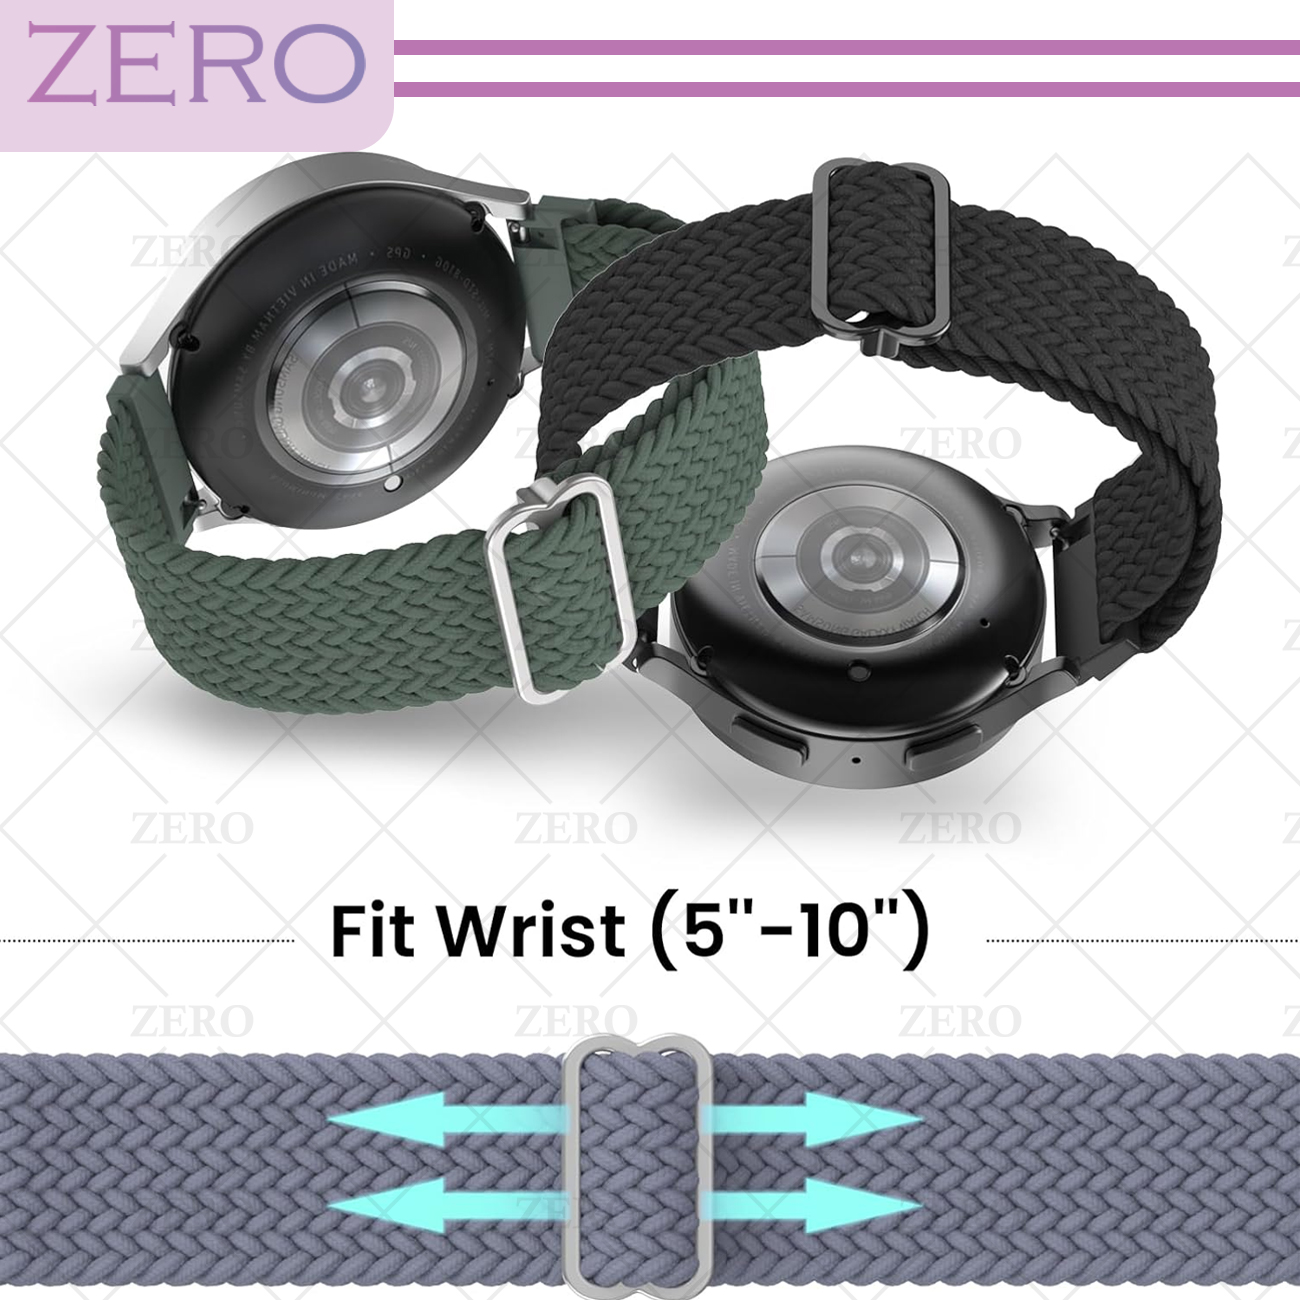 بند زیرو مدل Braided ZR TW مناسب برای ساعت هوشمند میبرو Lite 2 / X1 / A1 / A2